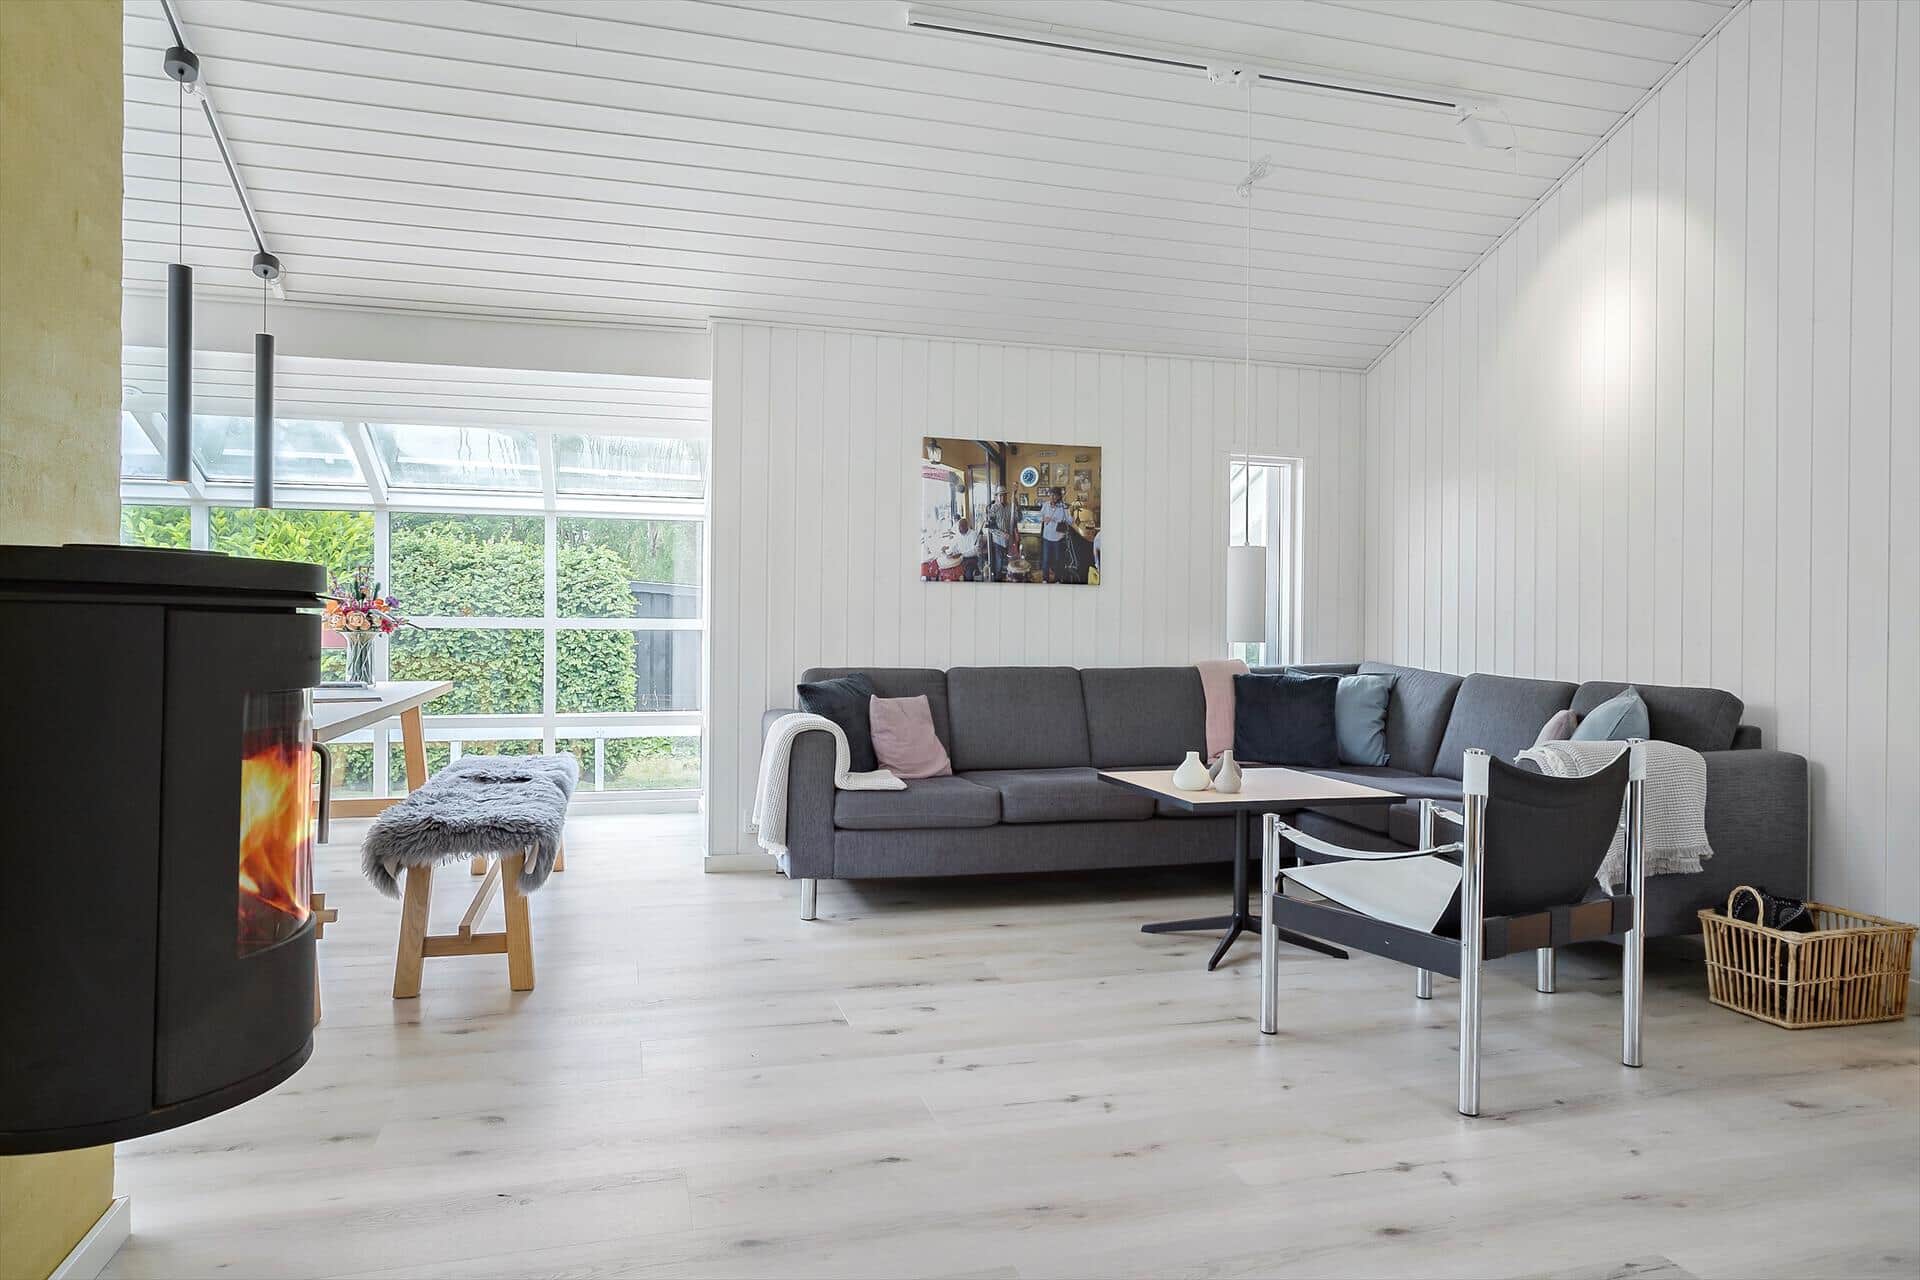 Livingroom 1 Image 2-19 Holiday-home 40106, Fasanlunden 34, DK - 7130 Juelsminde